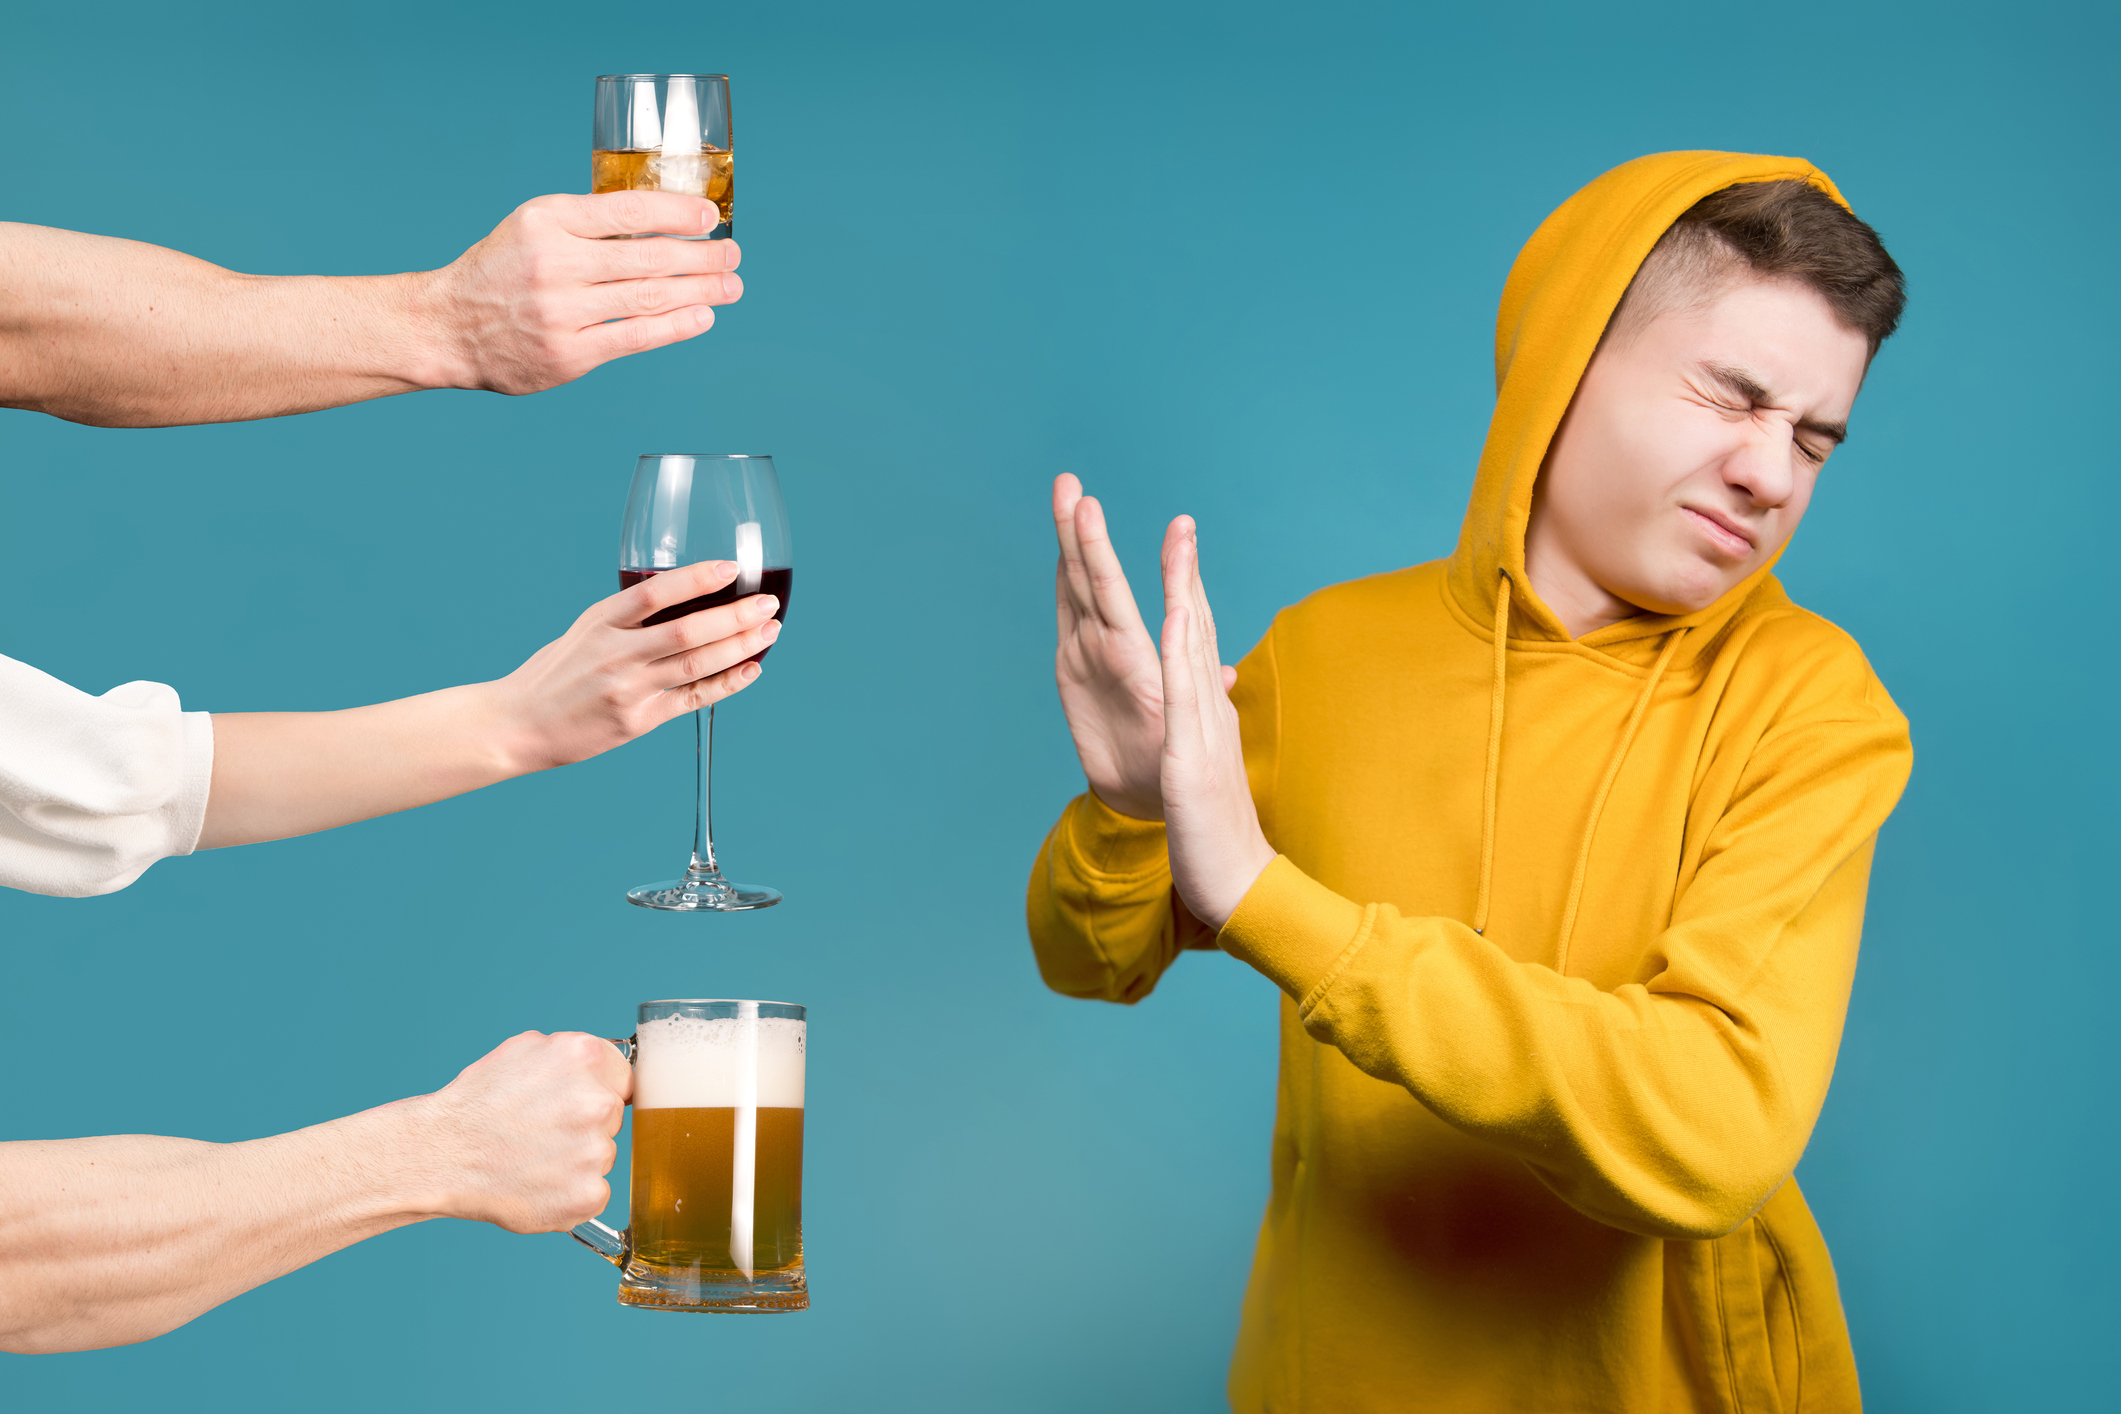 以为不喝大酒就不伤身了？978万人研究显示，常喝小酒危害更大 ＊ 阿波罗新闻网